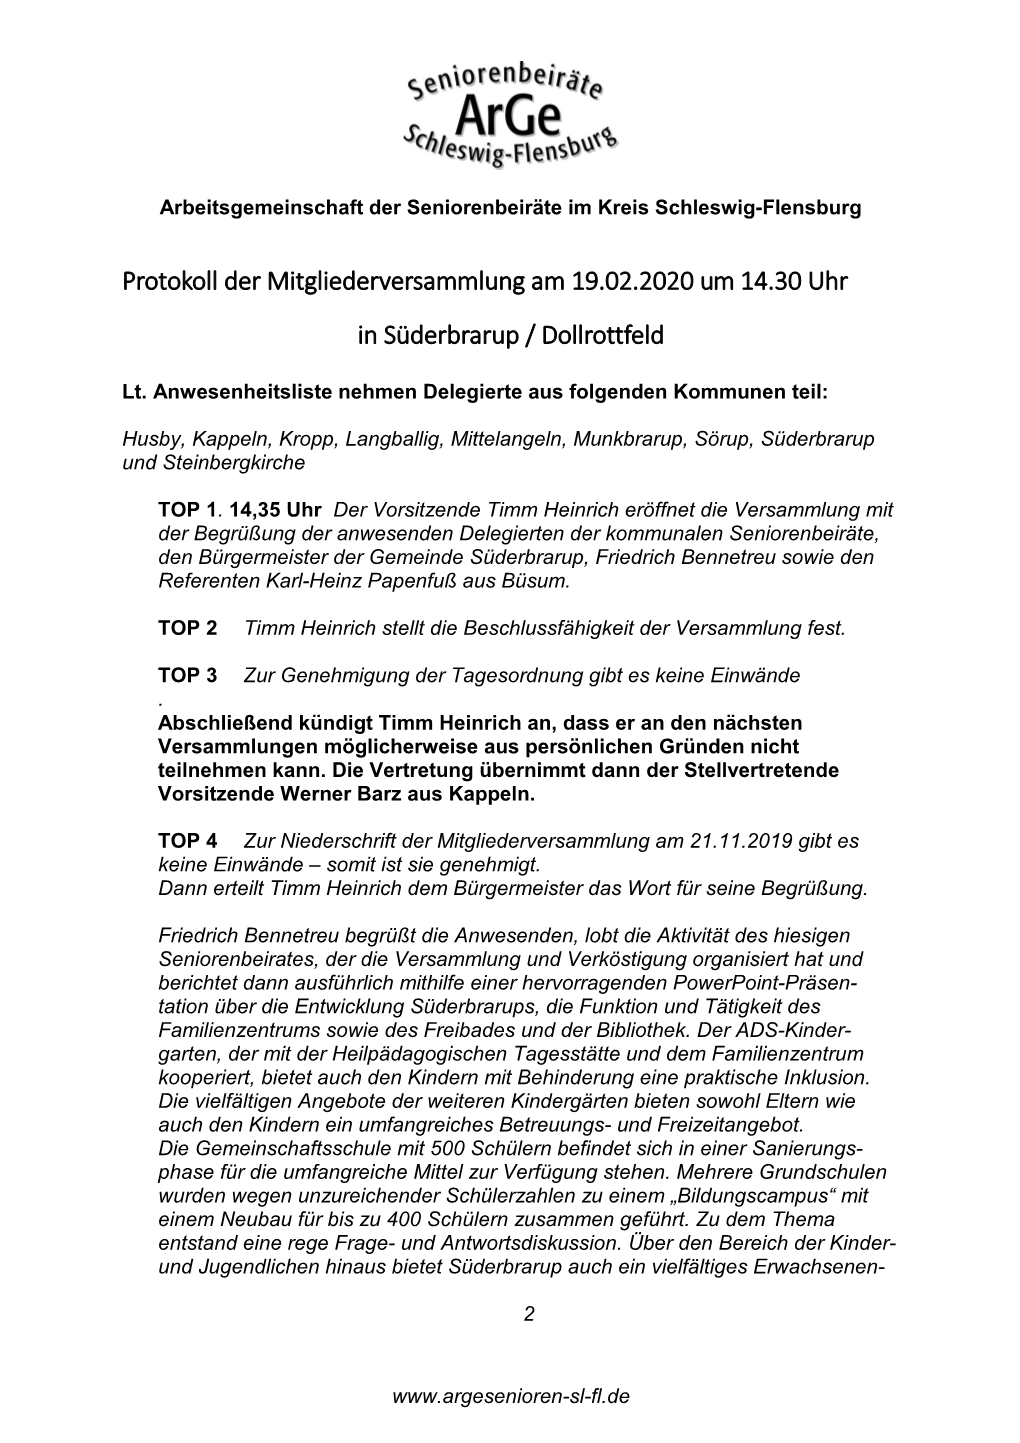 Protokoll Der Mitgliederversammlung Am 19.02.2020 Um 14.30 Uhr in Süderbrarup / Dollrottfeld